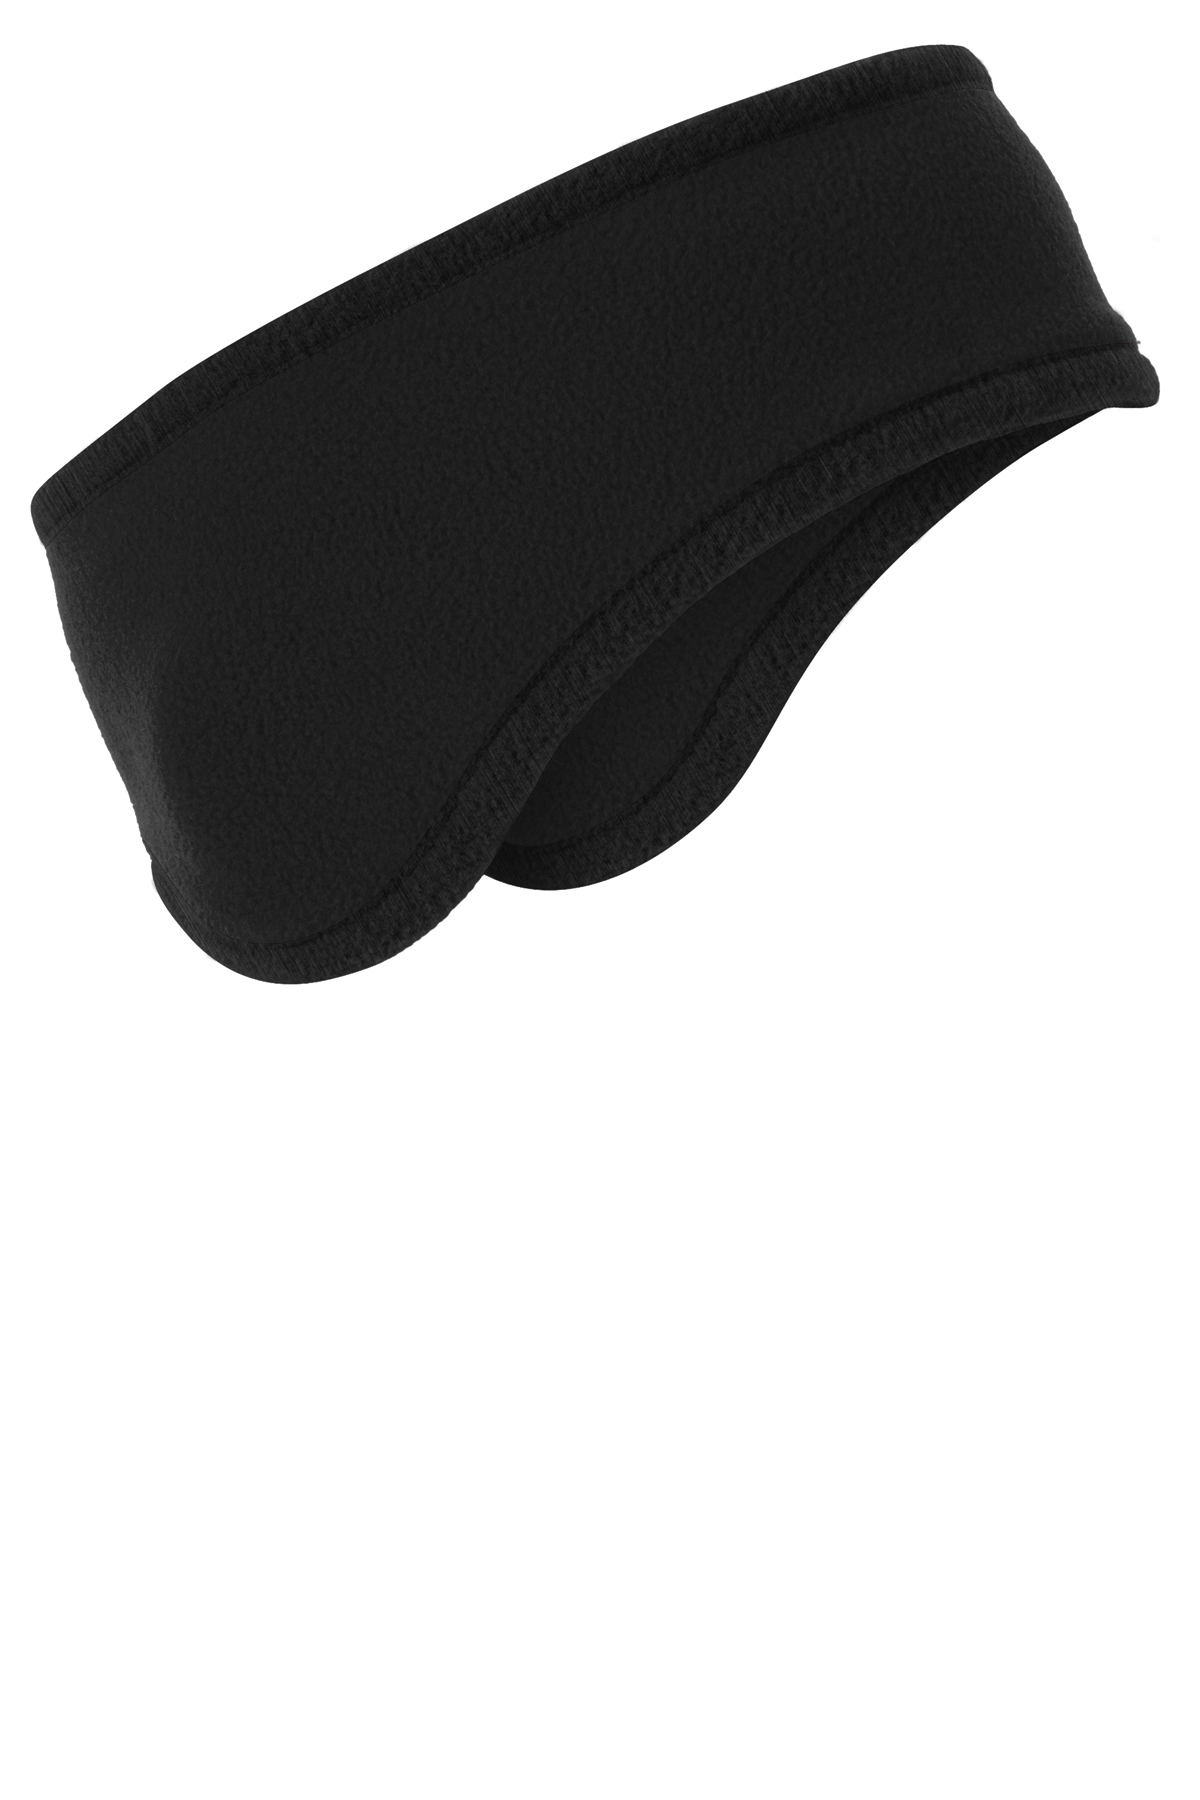 Port Authority Two-Color Fleece Headband | Product | SanMar